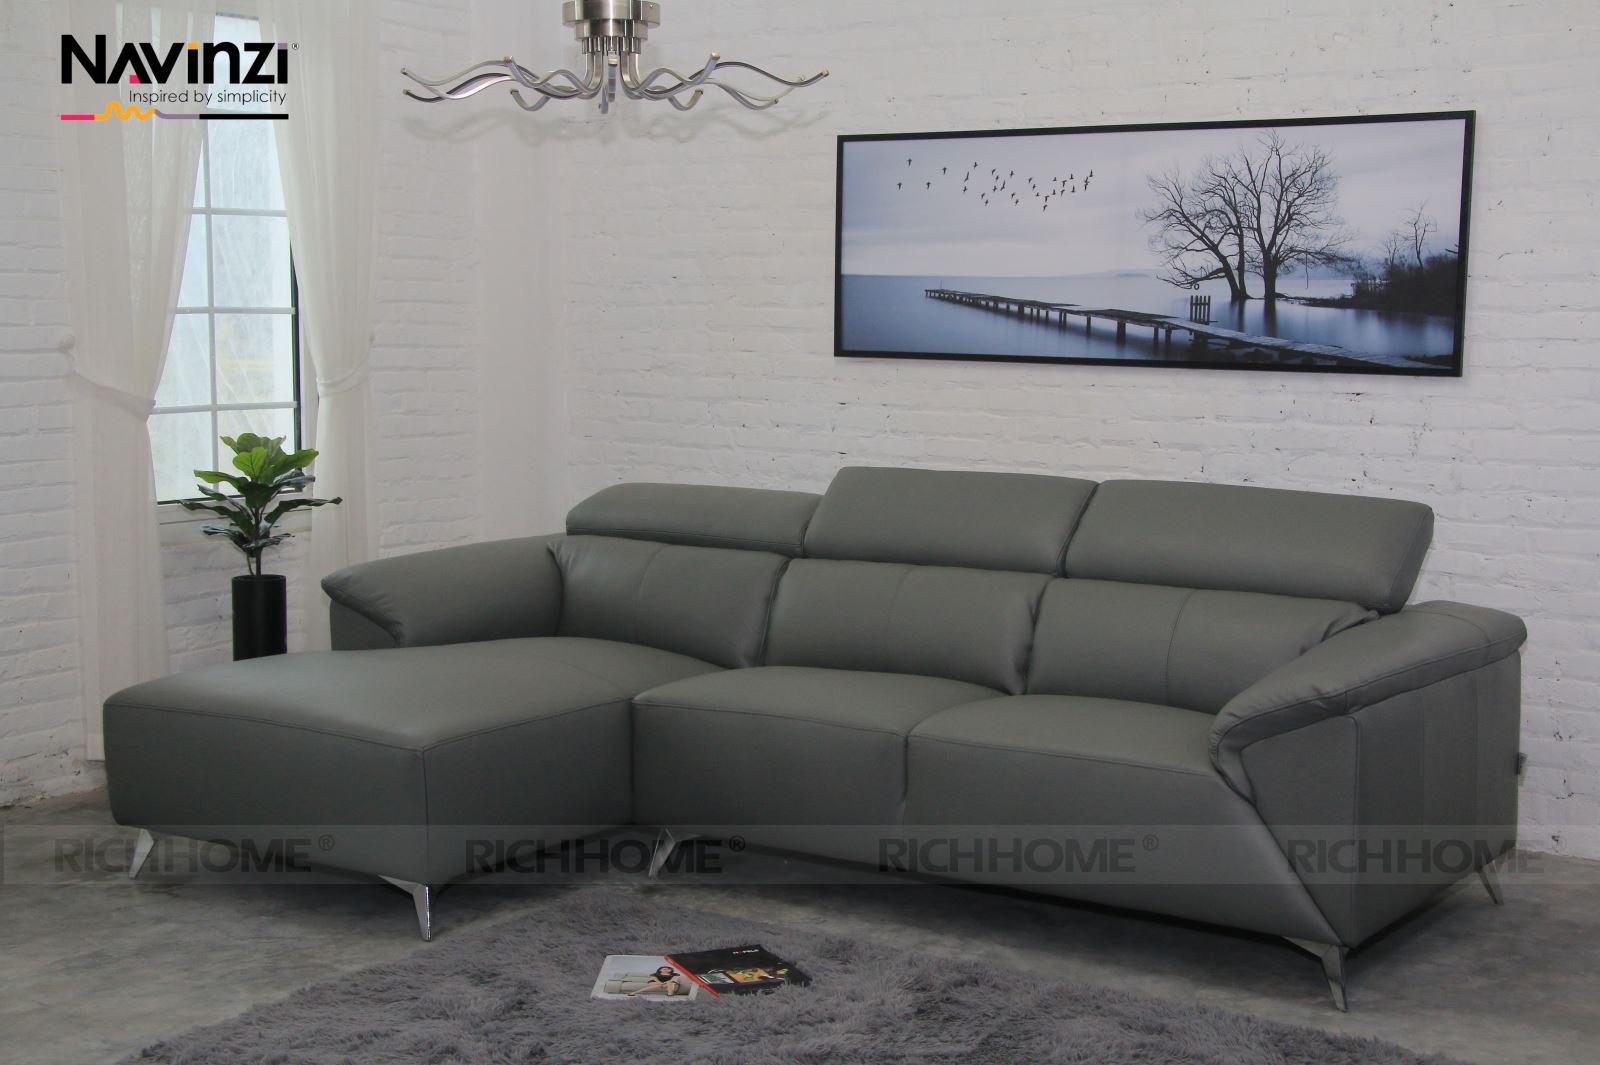 15 mẫu ghế sofa cho phòng khách 15m2 đẹp và Hot nhất hiện nay - Ảnh 4